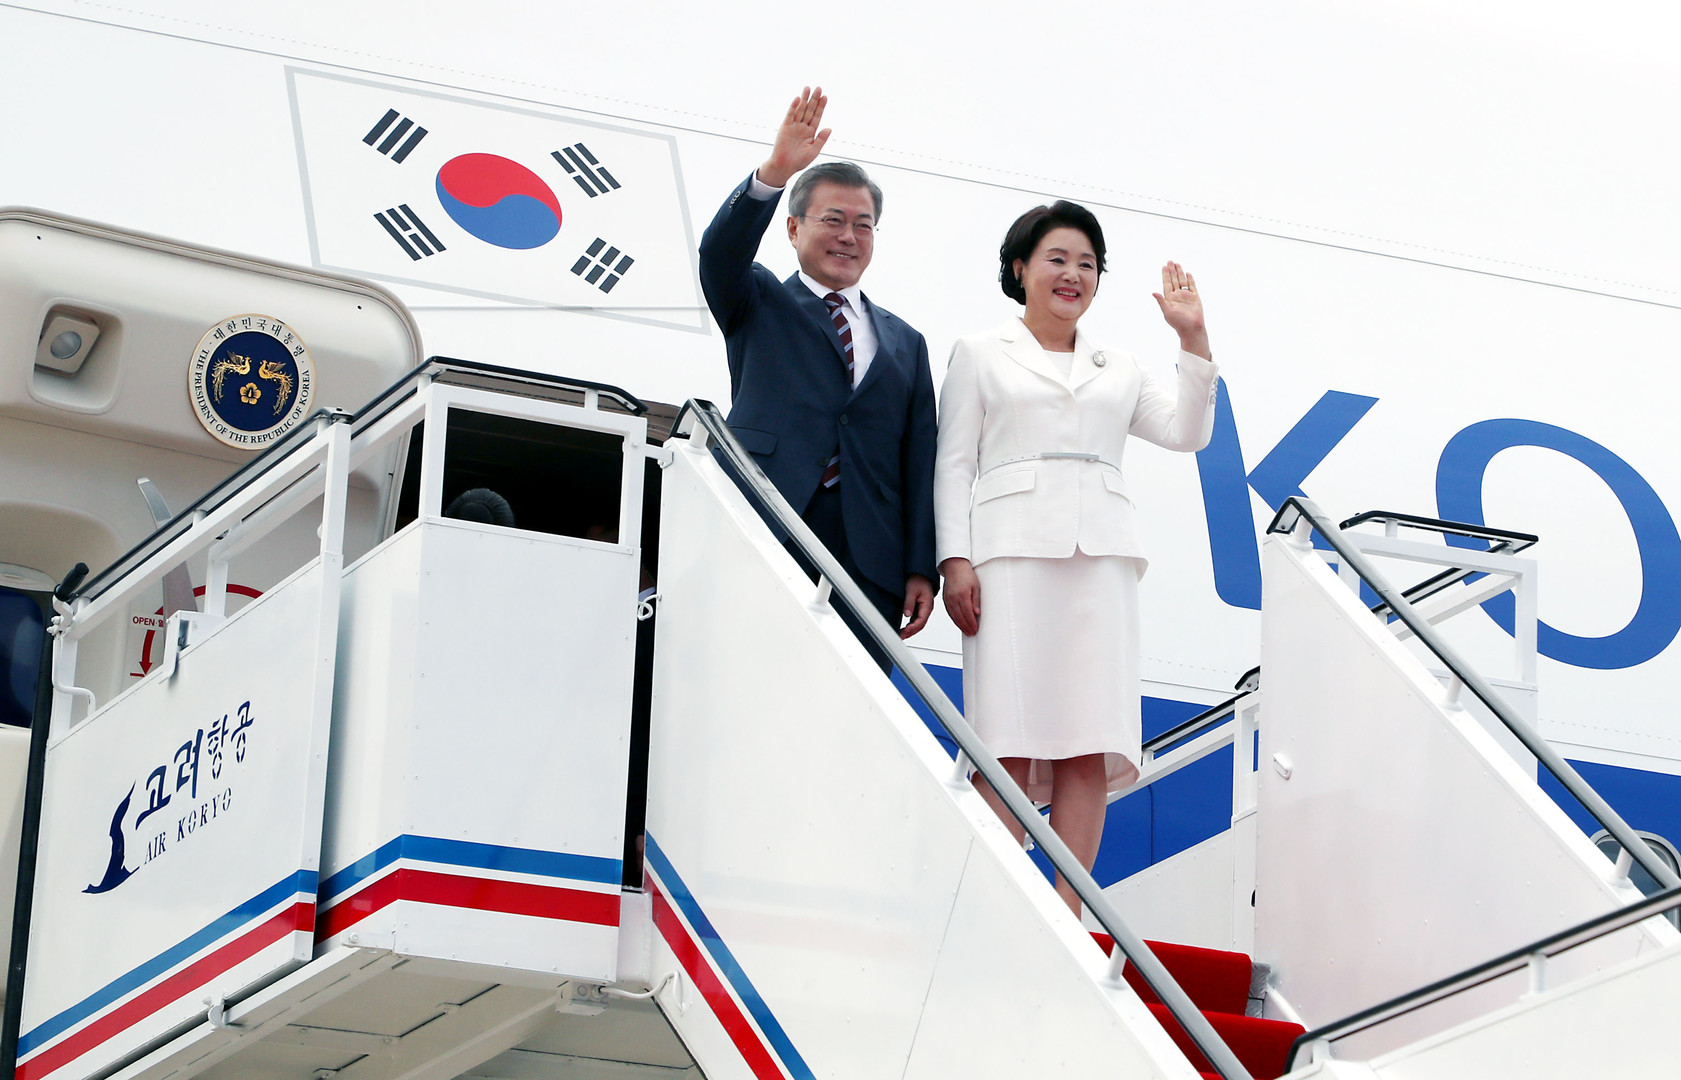 Les deux dirigeants coréens défilent sous les acclamations à Pyongyang (IMAGES) 